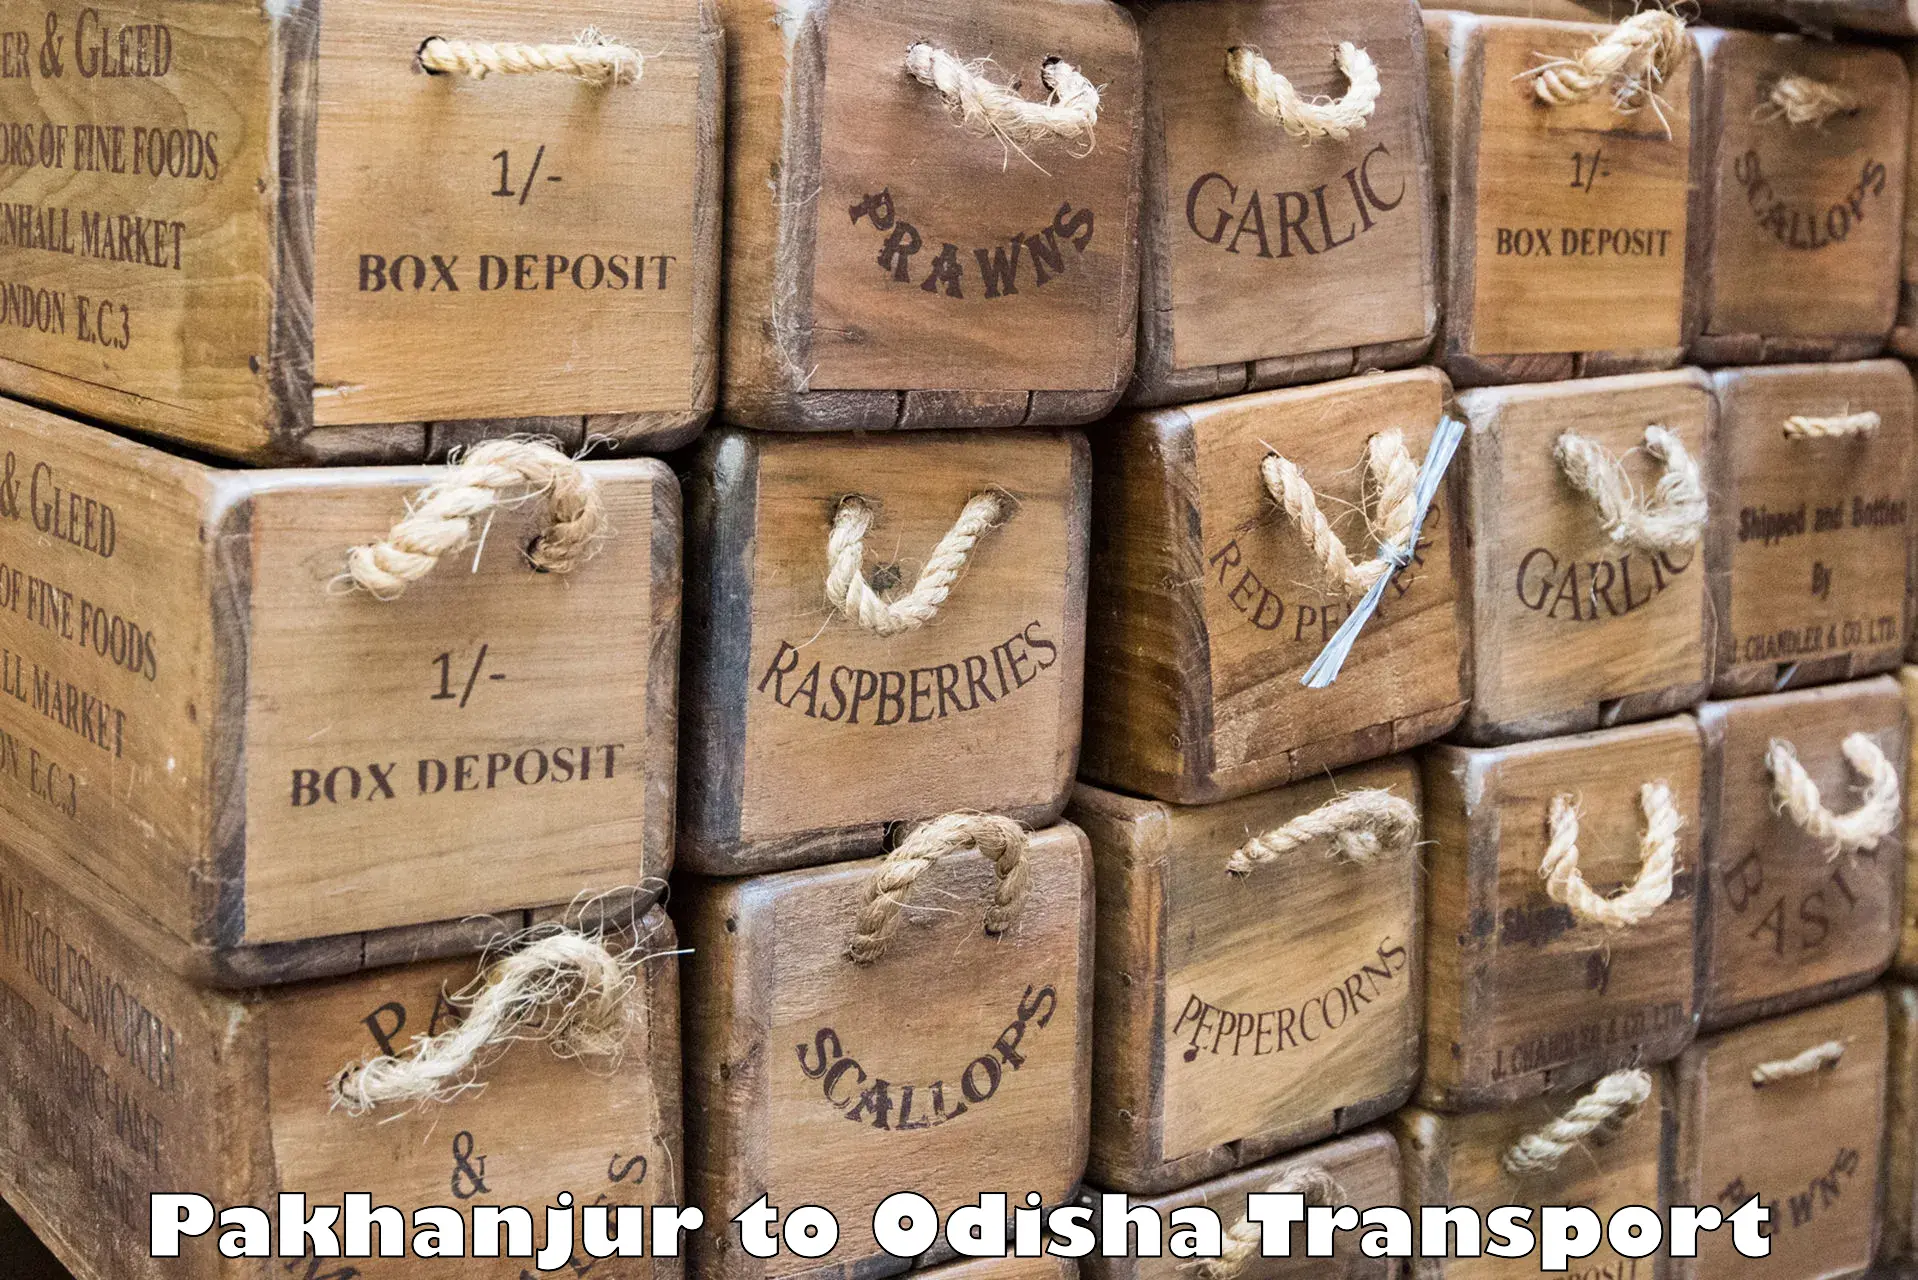 Air cargo transport services Pakhanjur to Nirakarpur